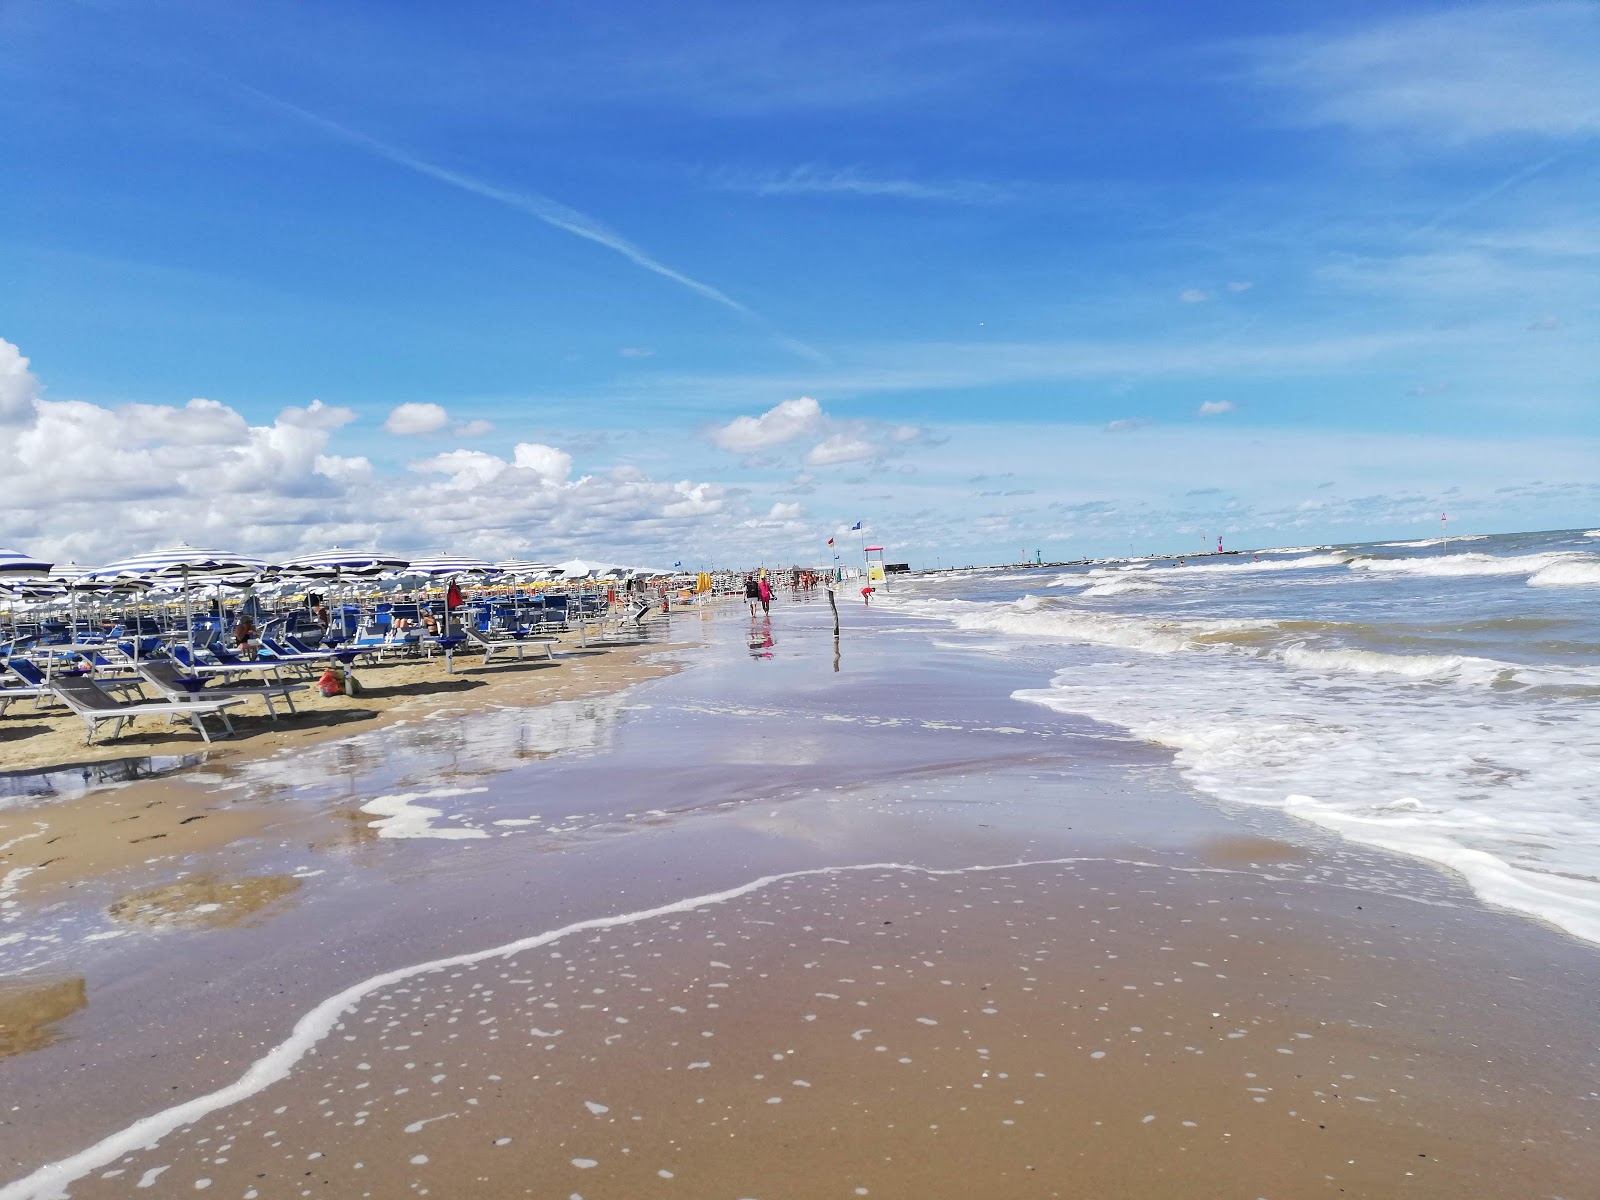 Cesenatico Özgür Plajı'in fotoğrafı plaj tatil beldesi alanı